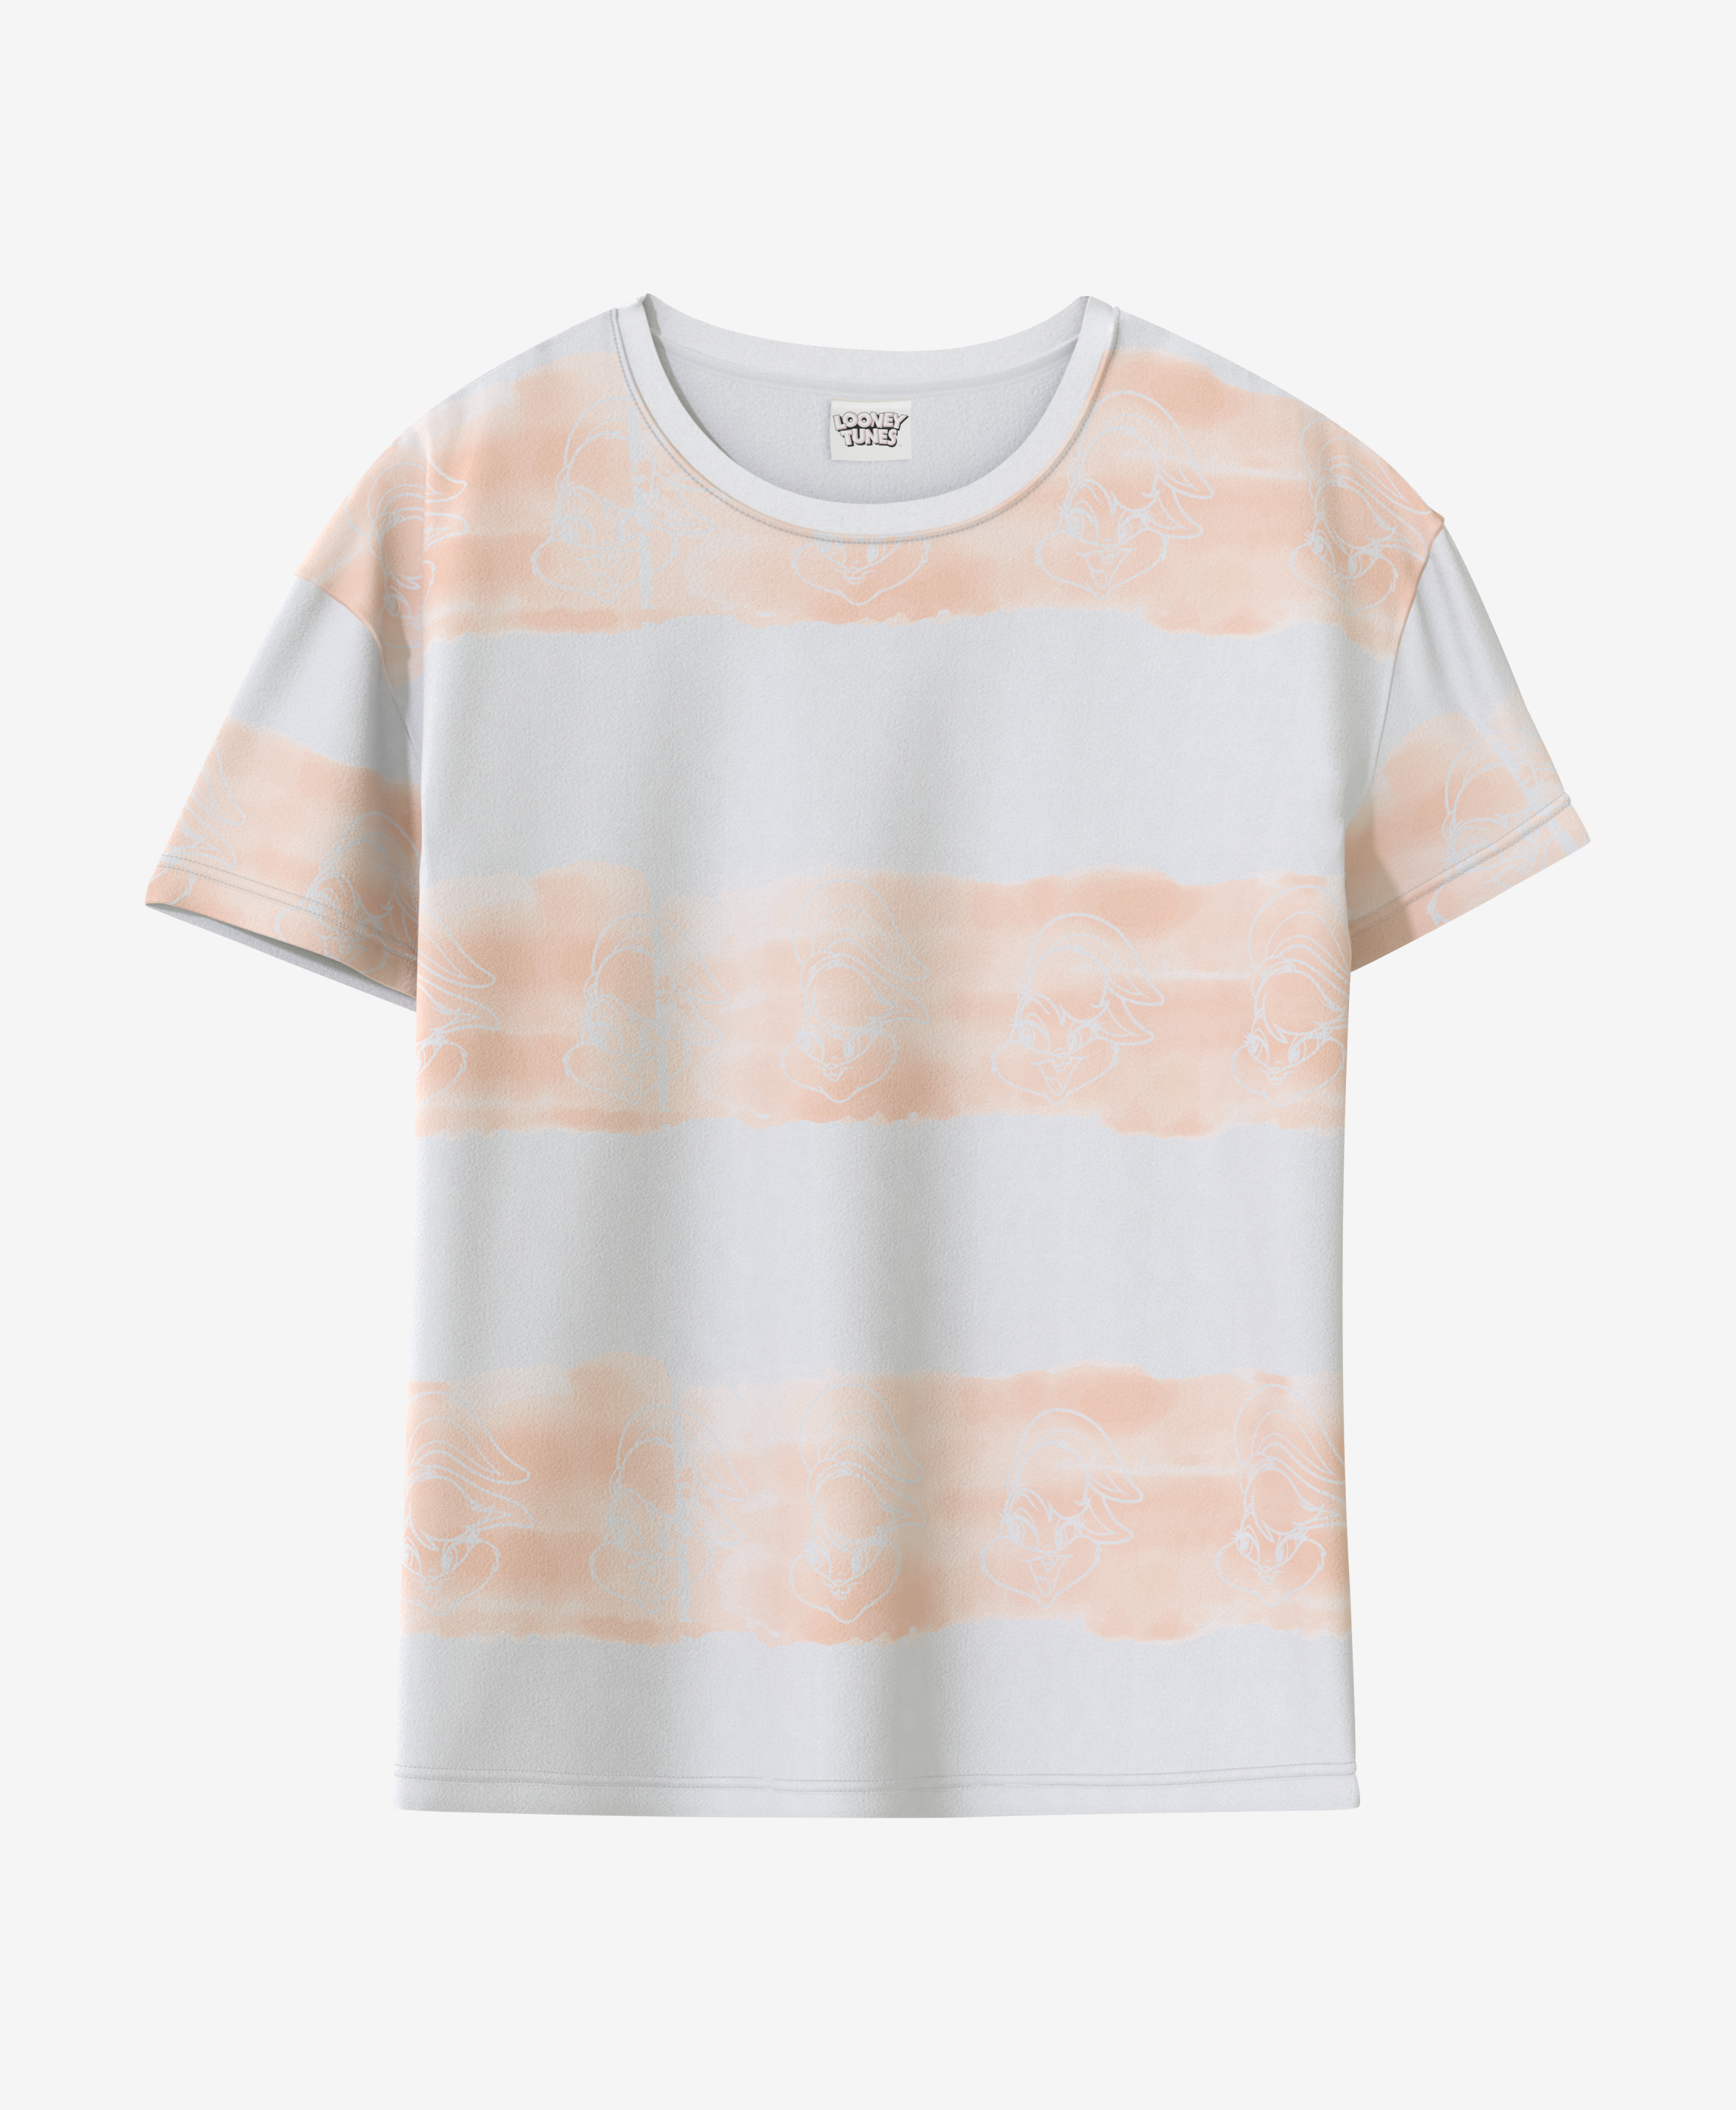 Damska koszulka 100% bawełny na licencji Warner Bros tie-dye, kolor biały, różowy, S-XXL